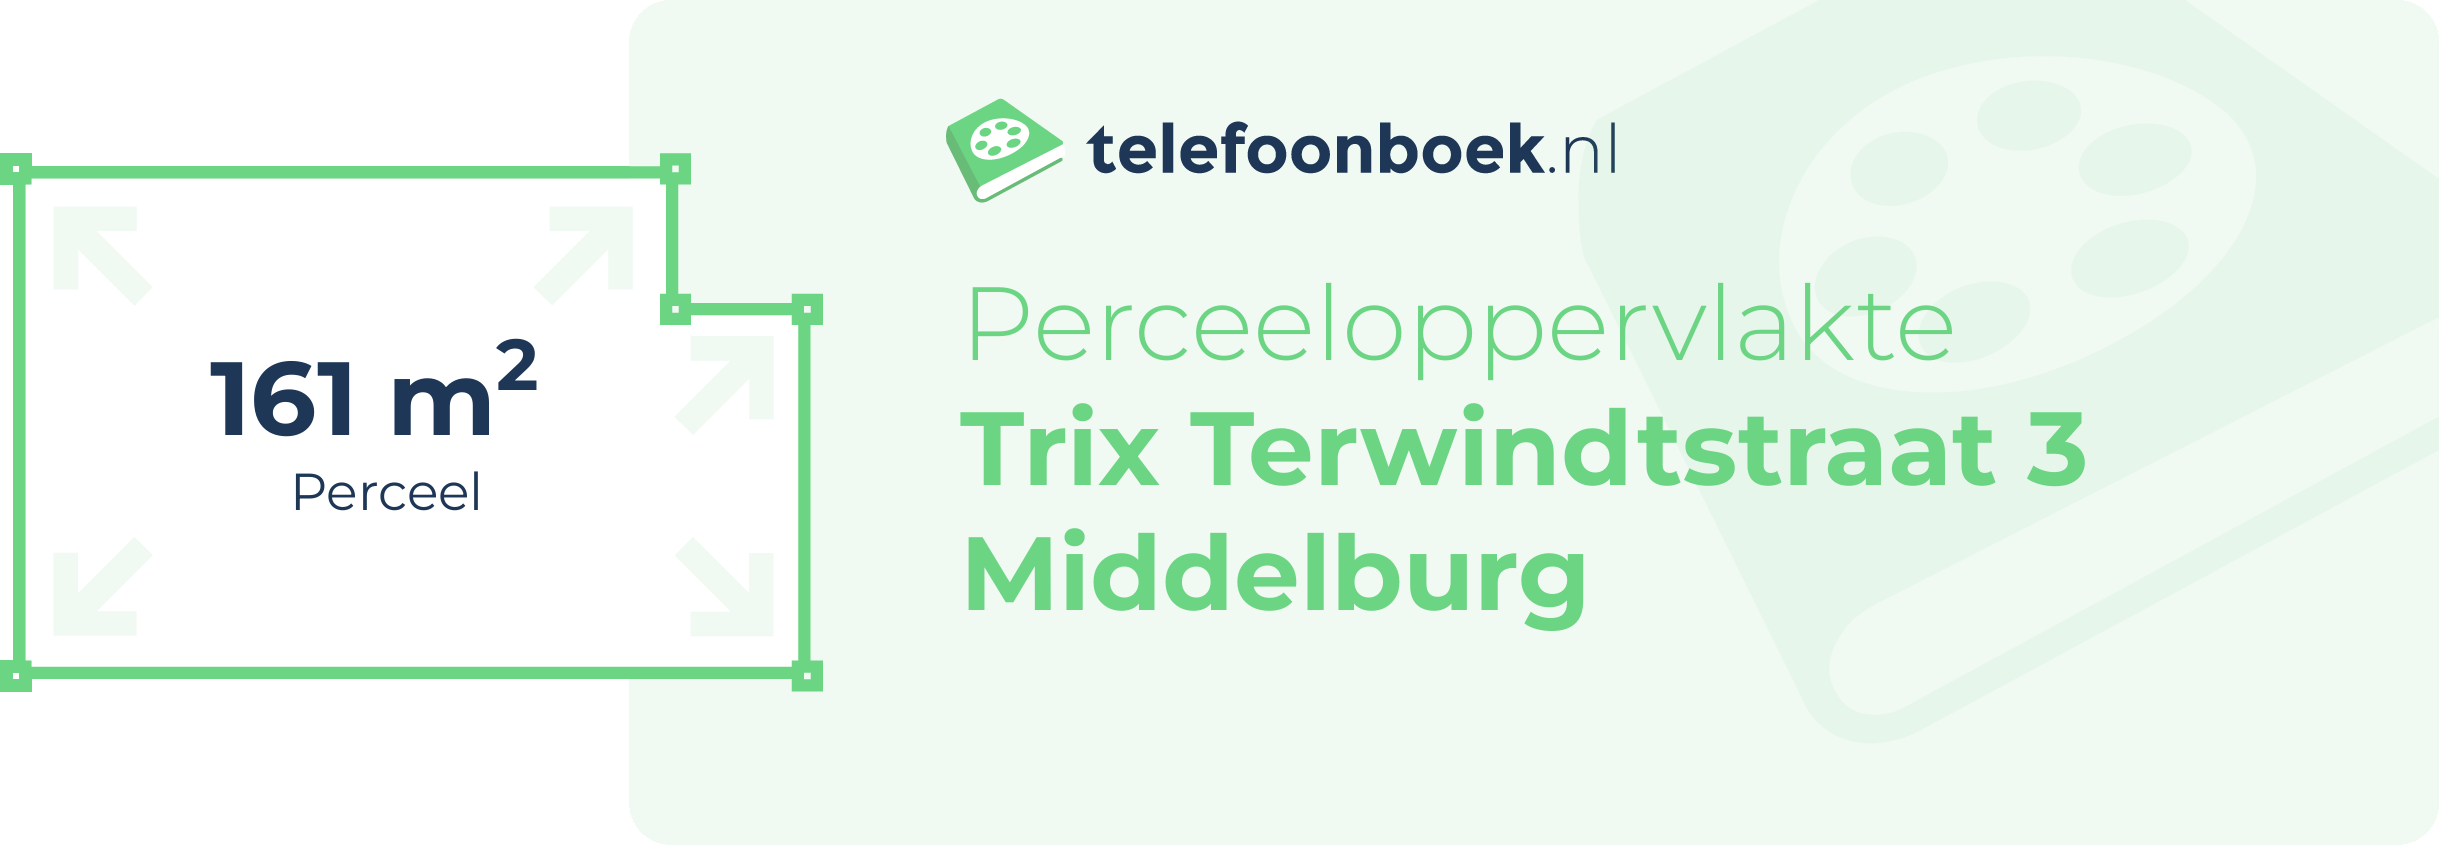 Perceeloppervlakte Trix Terwindtstraat 3 Middelburg